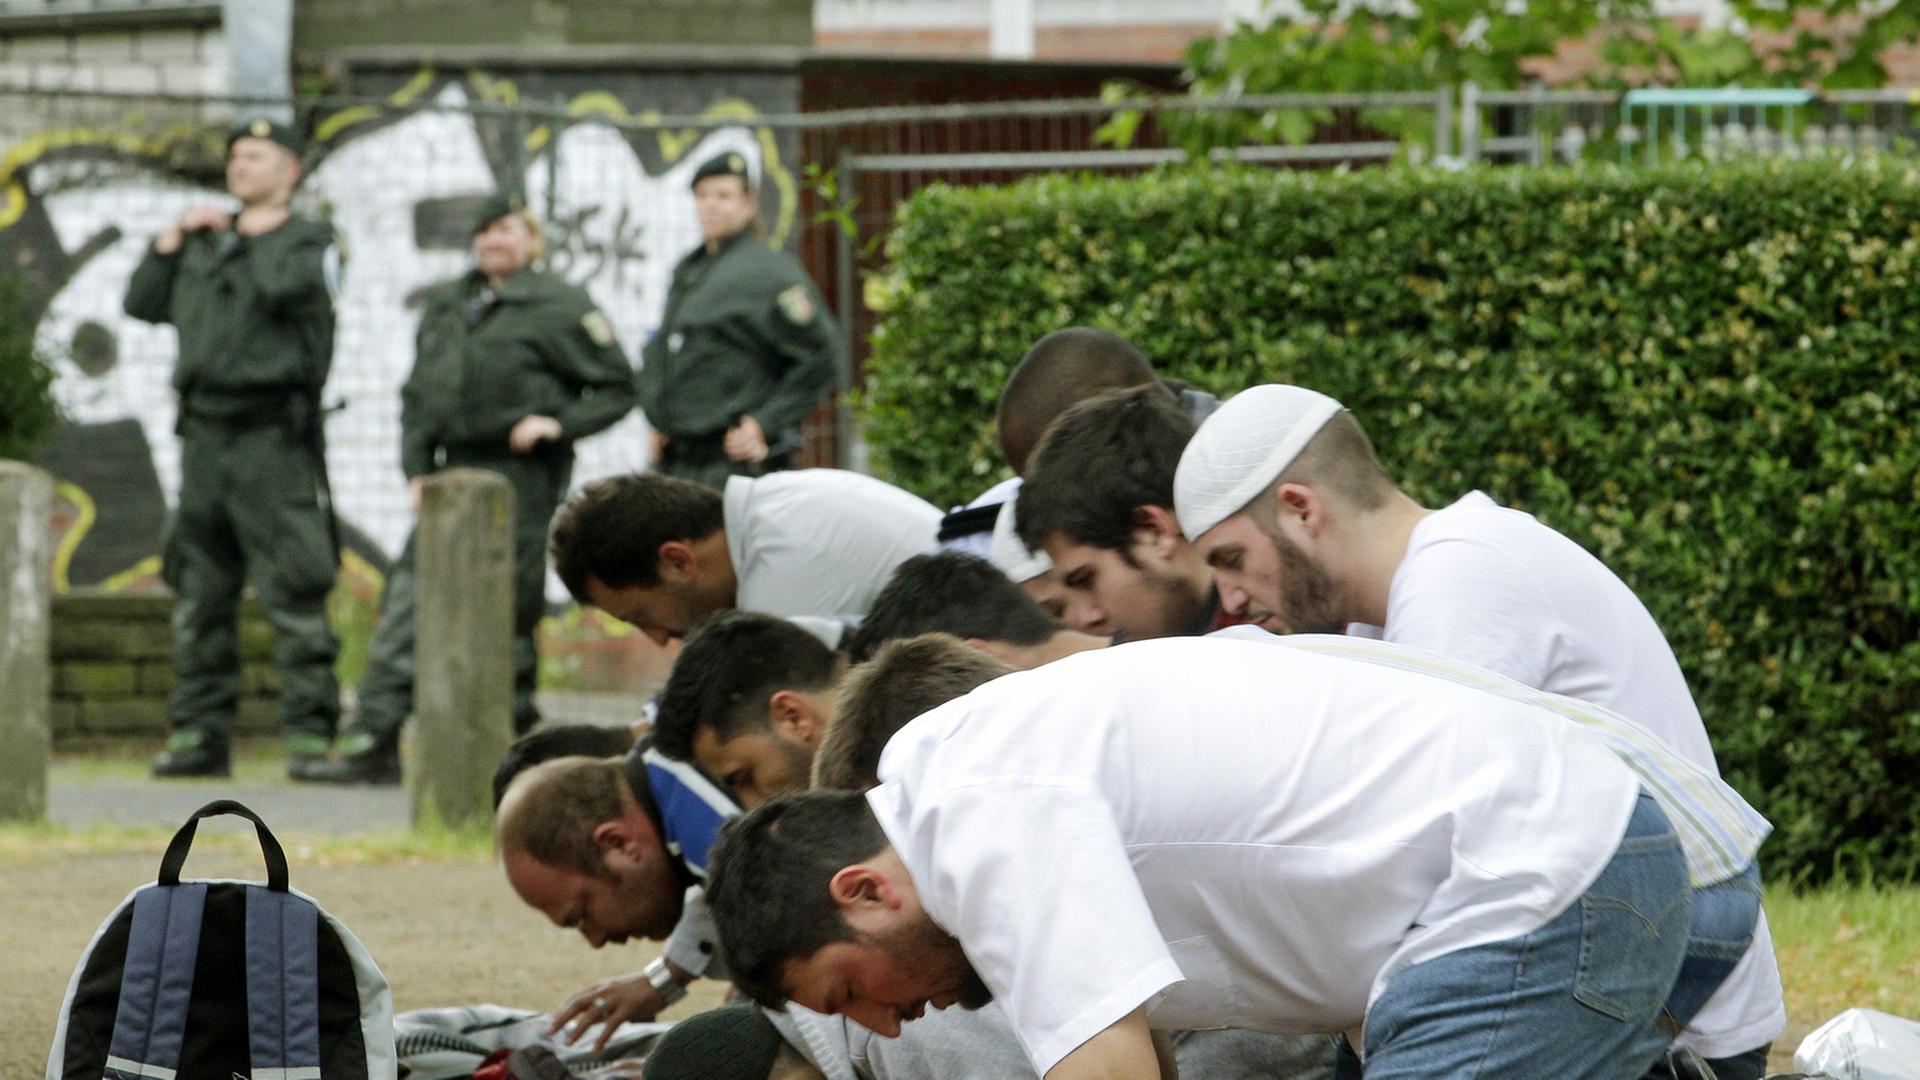 Anhänger der Salafisten beten am Samstag (09.06.2012) in Köln unter der Beobachtung der Polizei.